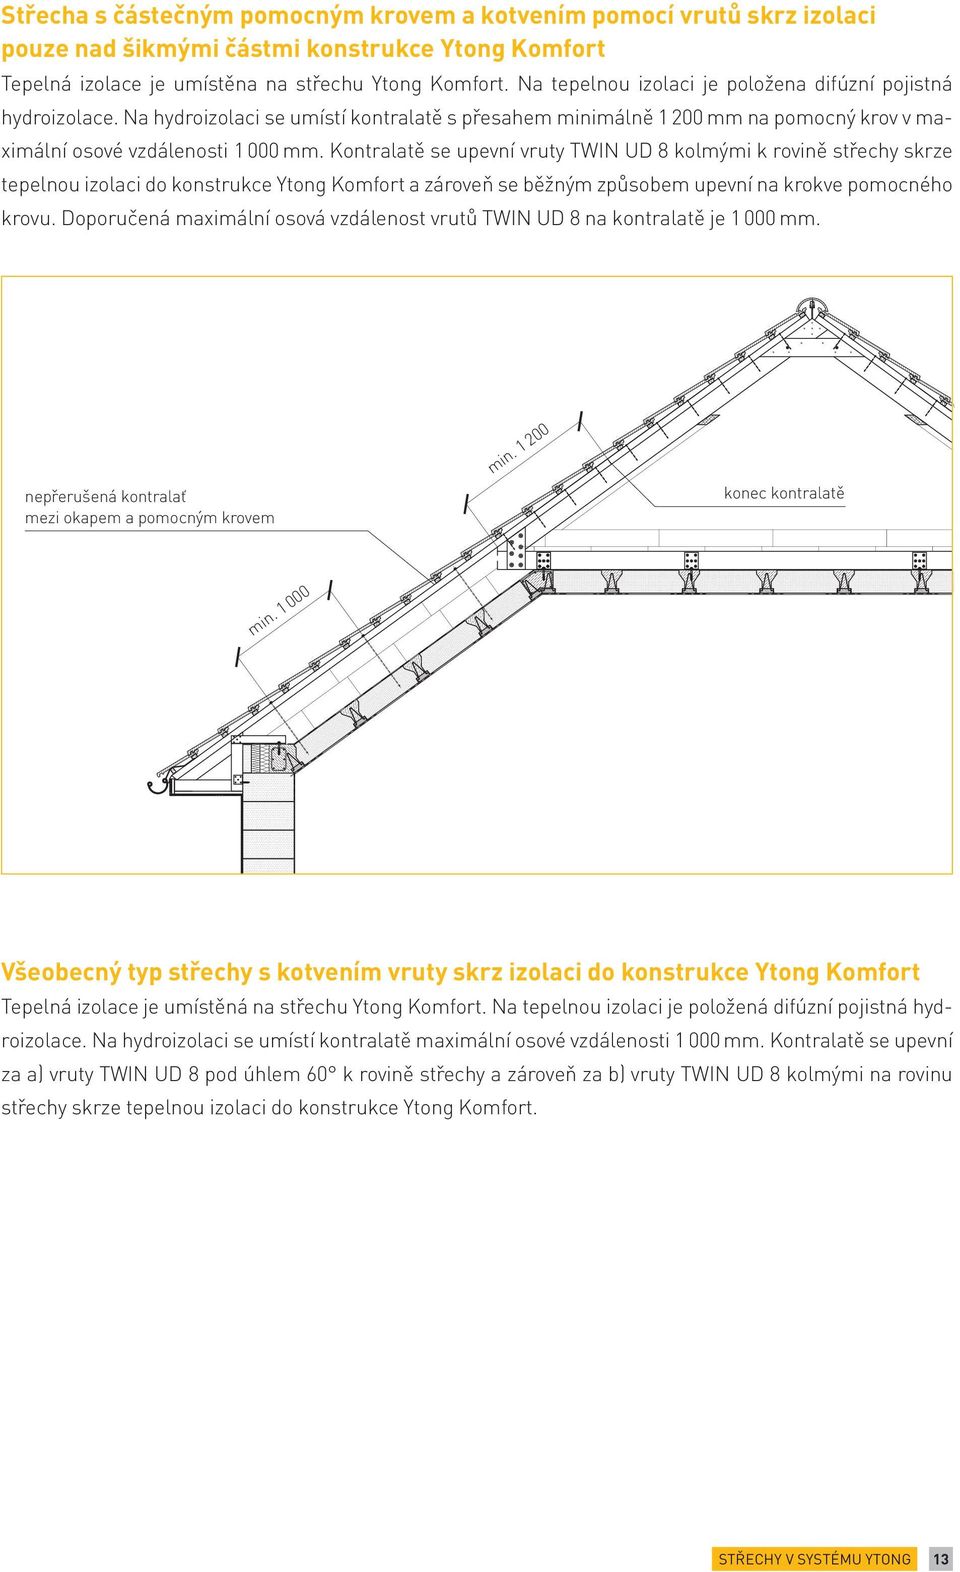 Kontralatě se upevní vruty TWIN UD 8 kolmými k rovině střechy skrze tepelnou izolaci do konstrukce Ytong Komfort a zároveň se běžným způsobem upevní na krokve pomocného krovu.